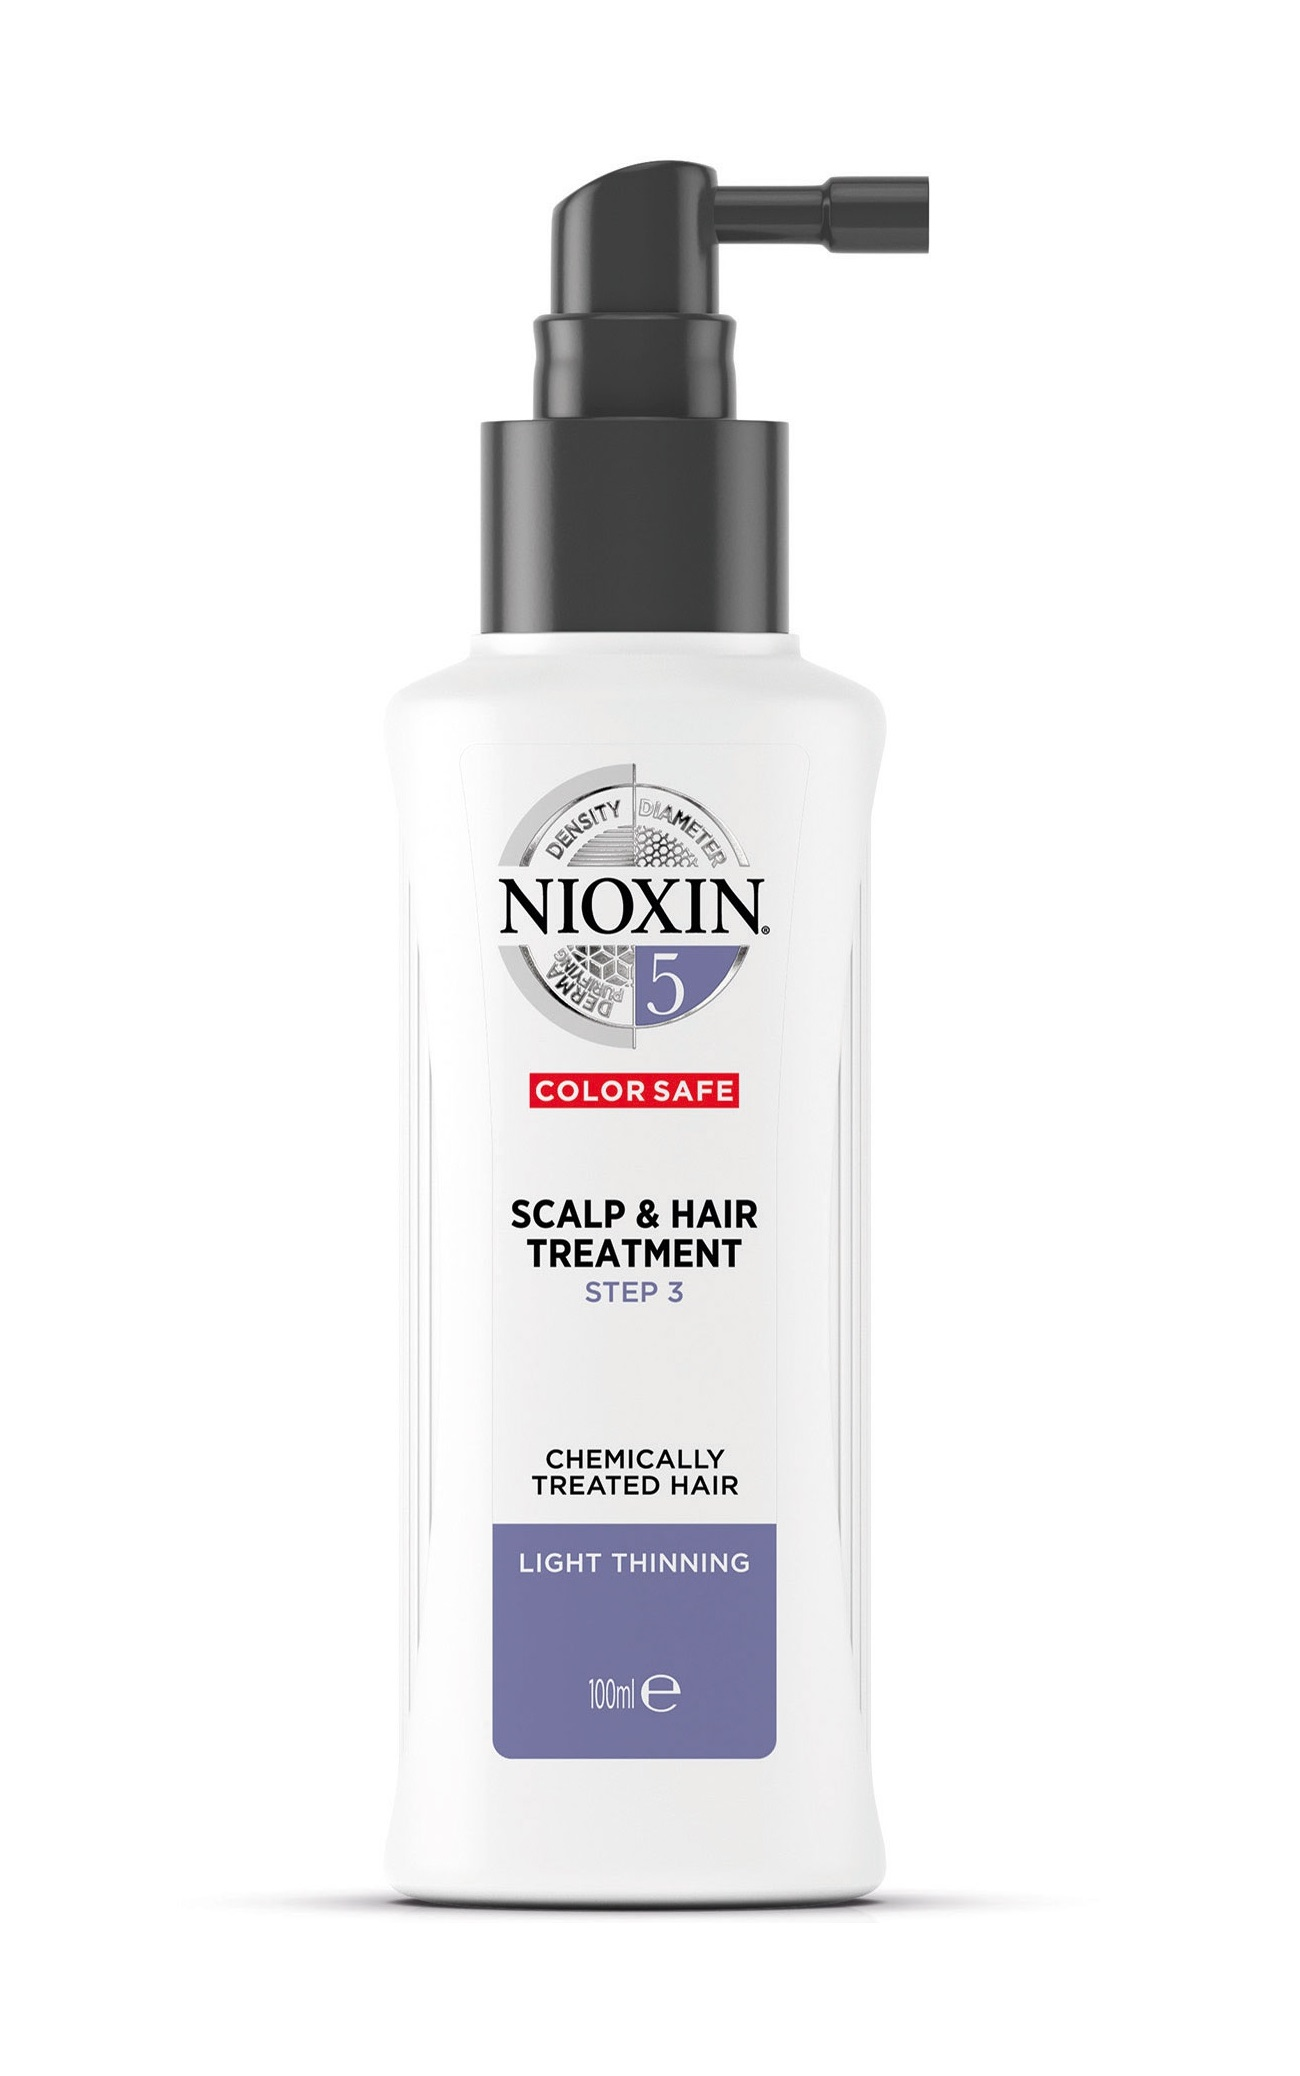 NIOXIN Маска питательная для жестких натуральных и окрашенных волос, с намечающейся тенденцией к выпадению, Система 5, 100 мл nioxin маска питательная для жестких натуральных и окрашенных волос с намечающейся тенденцией к выпадению система 5 100 мл